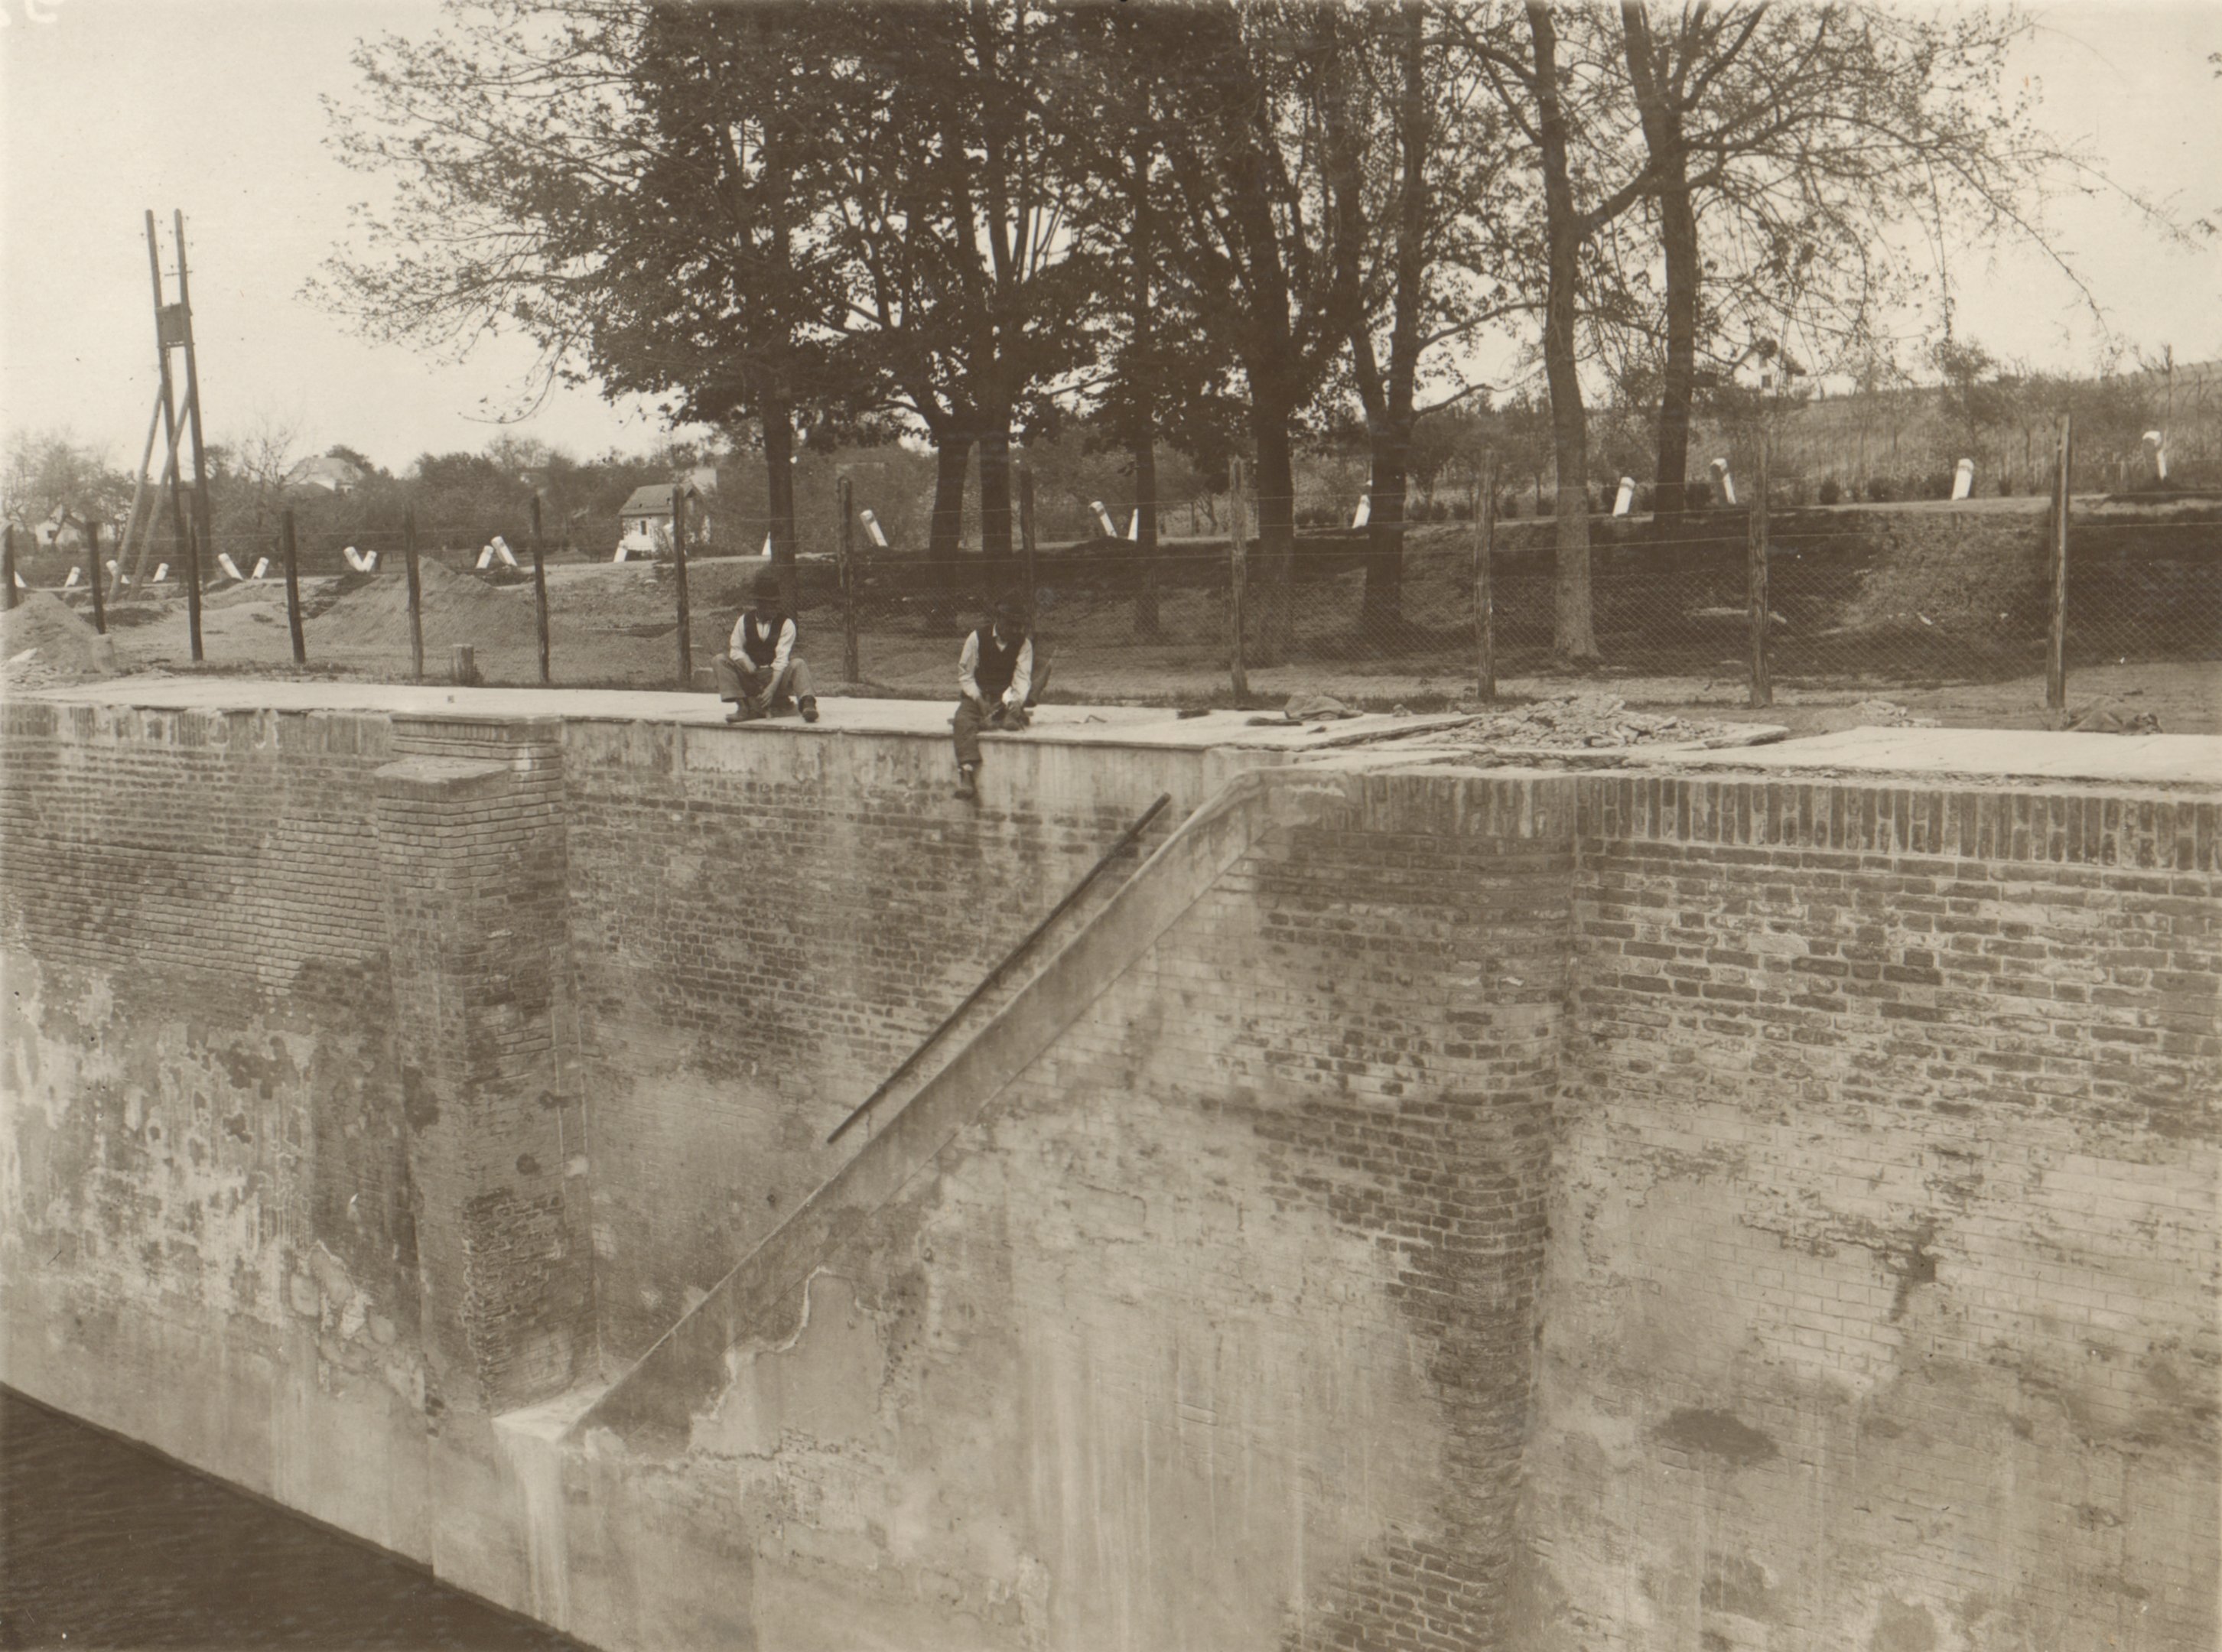 A hajózózsilip baloldali falának javítása. A lejáró körüli falfelület javítás után, 1932. május 6. (Magyar Környezetvédelmi és Vízügyi Múzeum - Duna Múzeum CC BY-NC-SA)